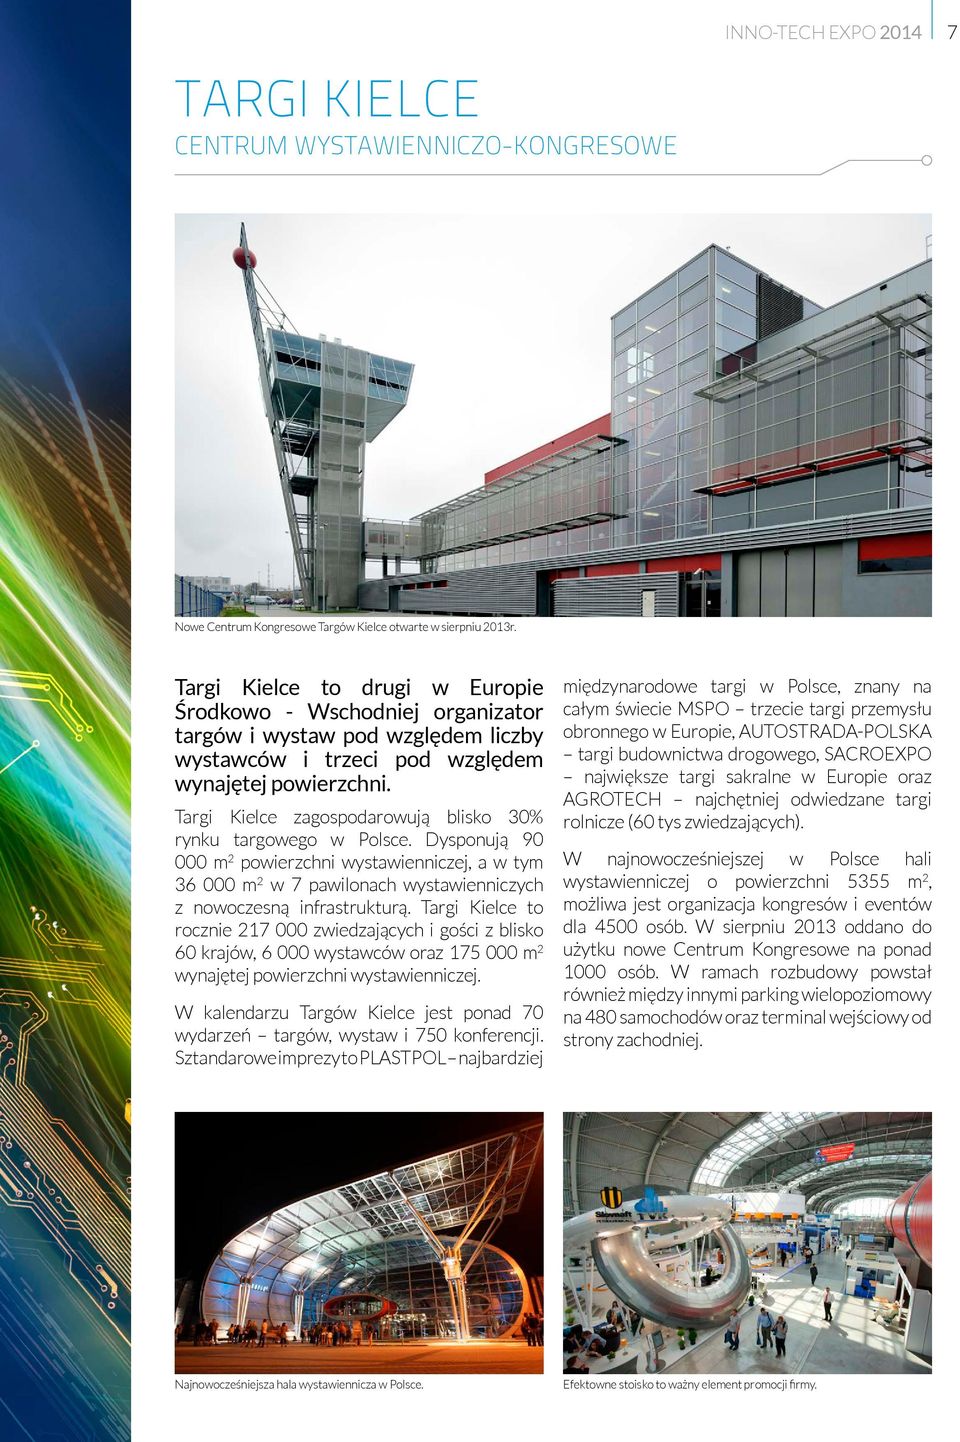 Targi Kielce zagospodarowują blisko 30% rynku targowego w Polsce. Dysponują 90 000 m 2 powierzchni wystawienniczej, a w tym 36 000 m 2 w 7 pawilonach wystawienniczych z nowoczesną infrastrukturą.